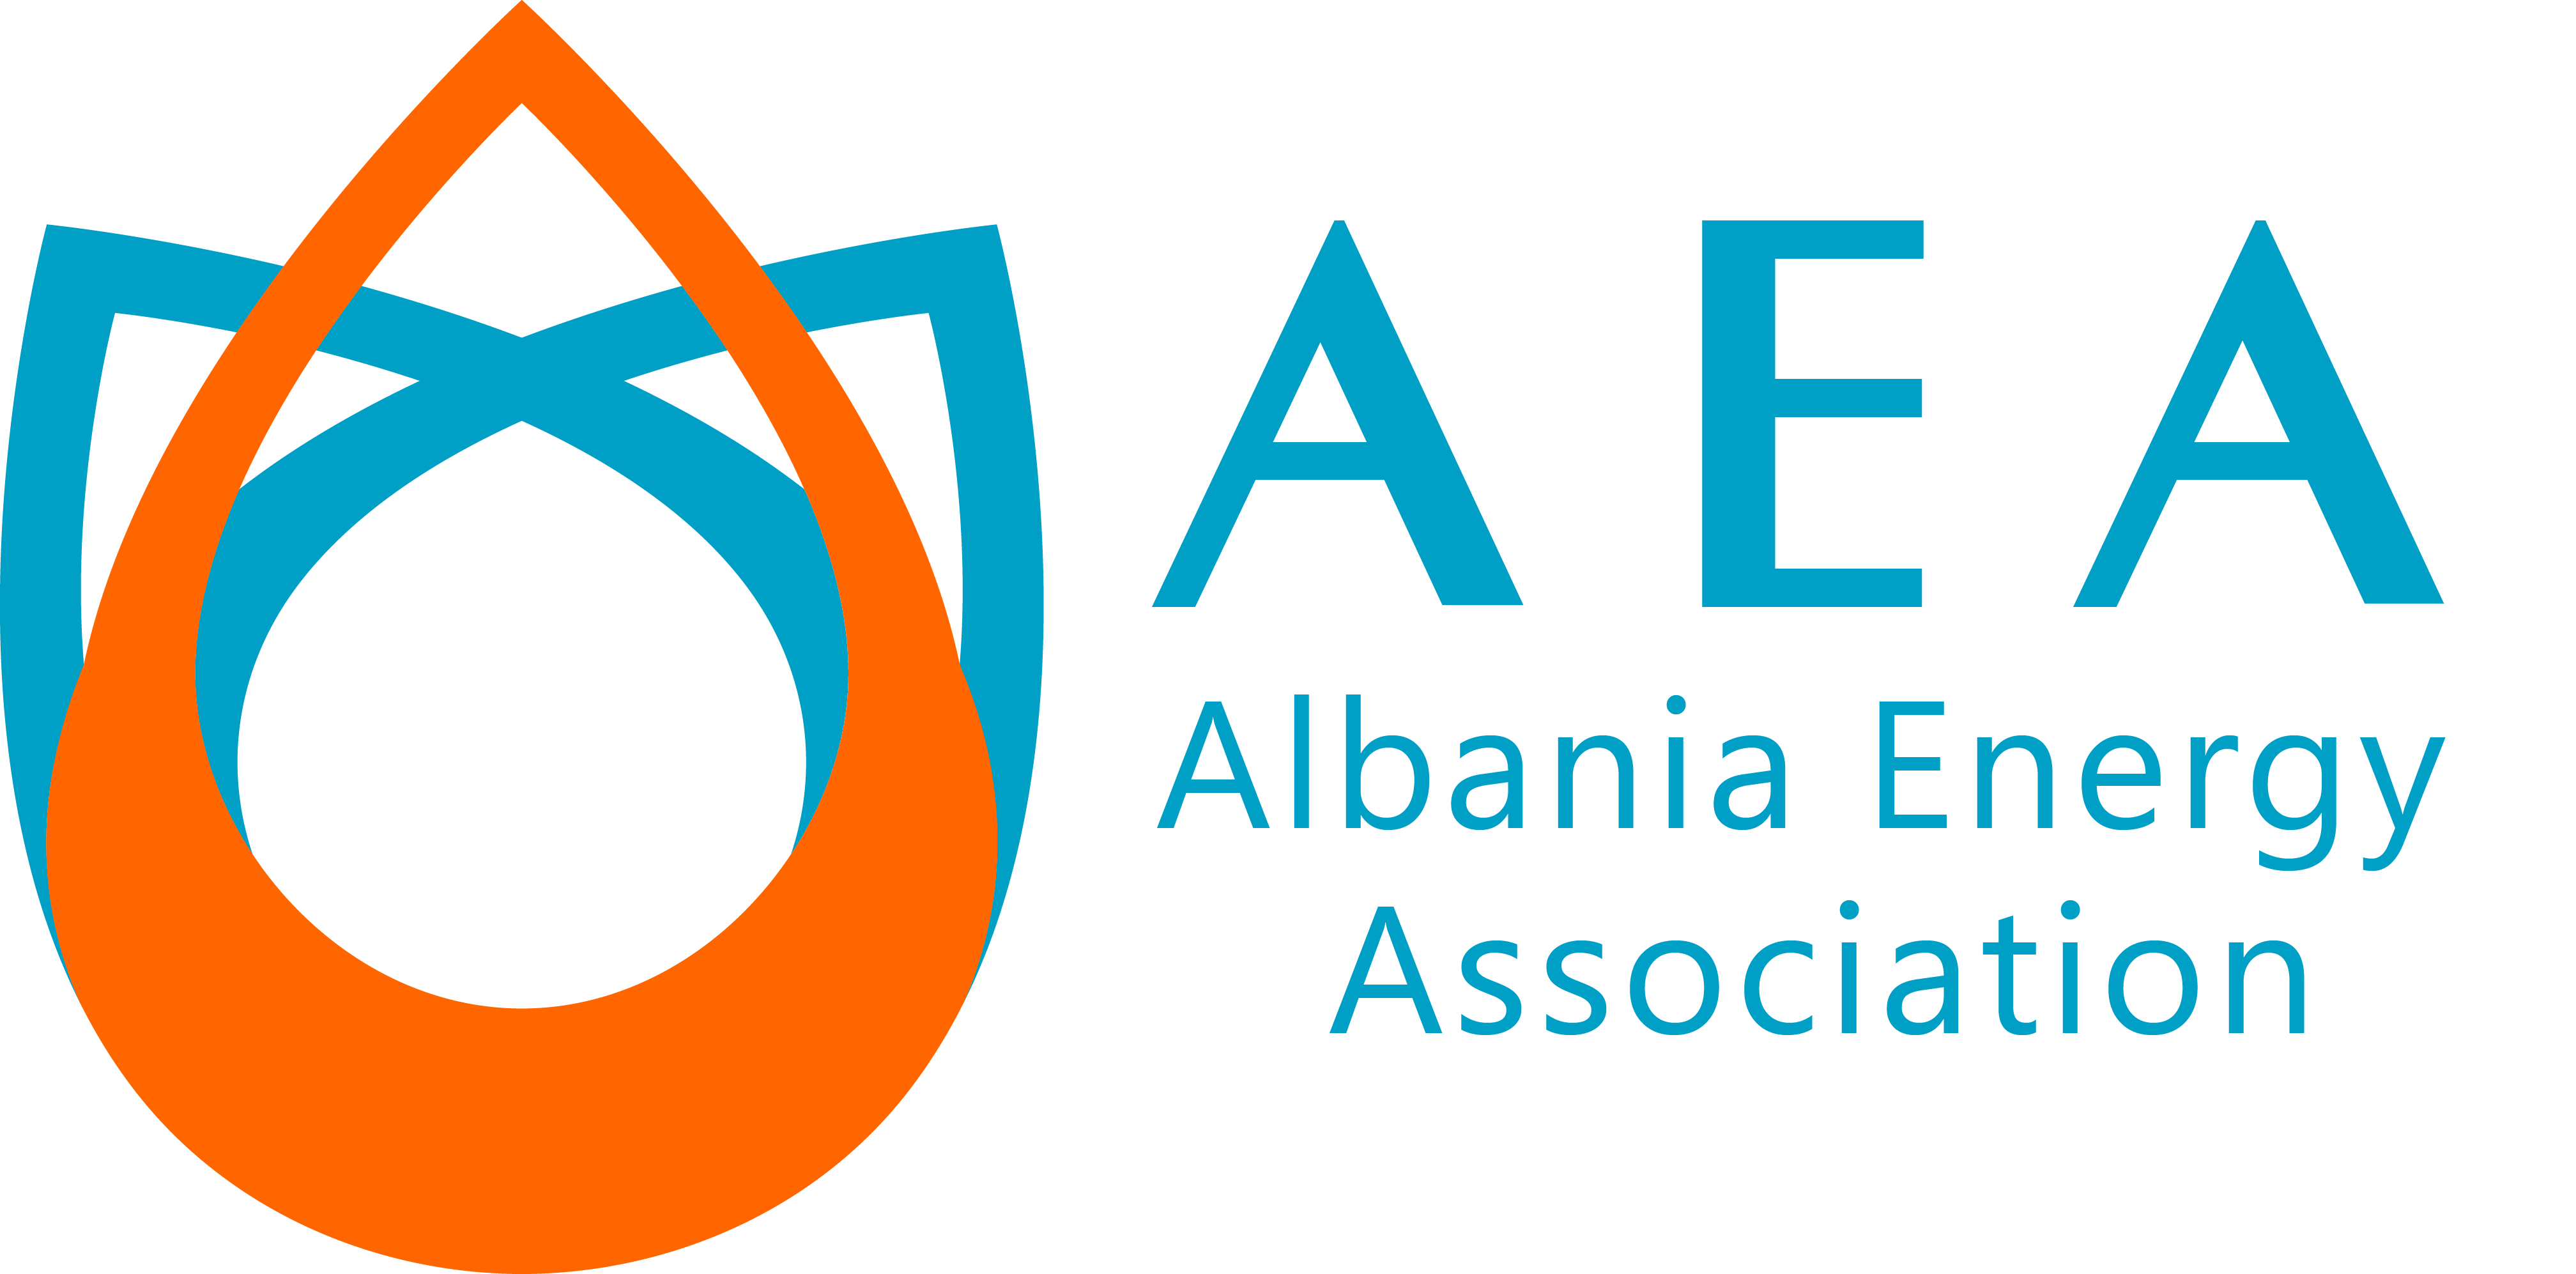 AEA Logo - AEA Logos. AEA Albania Energy Association